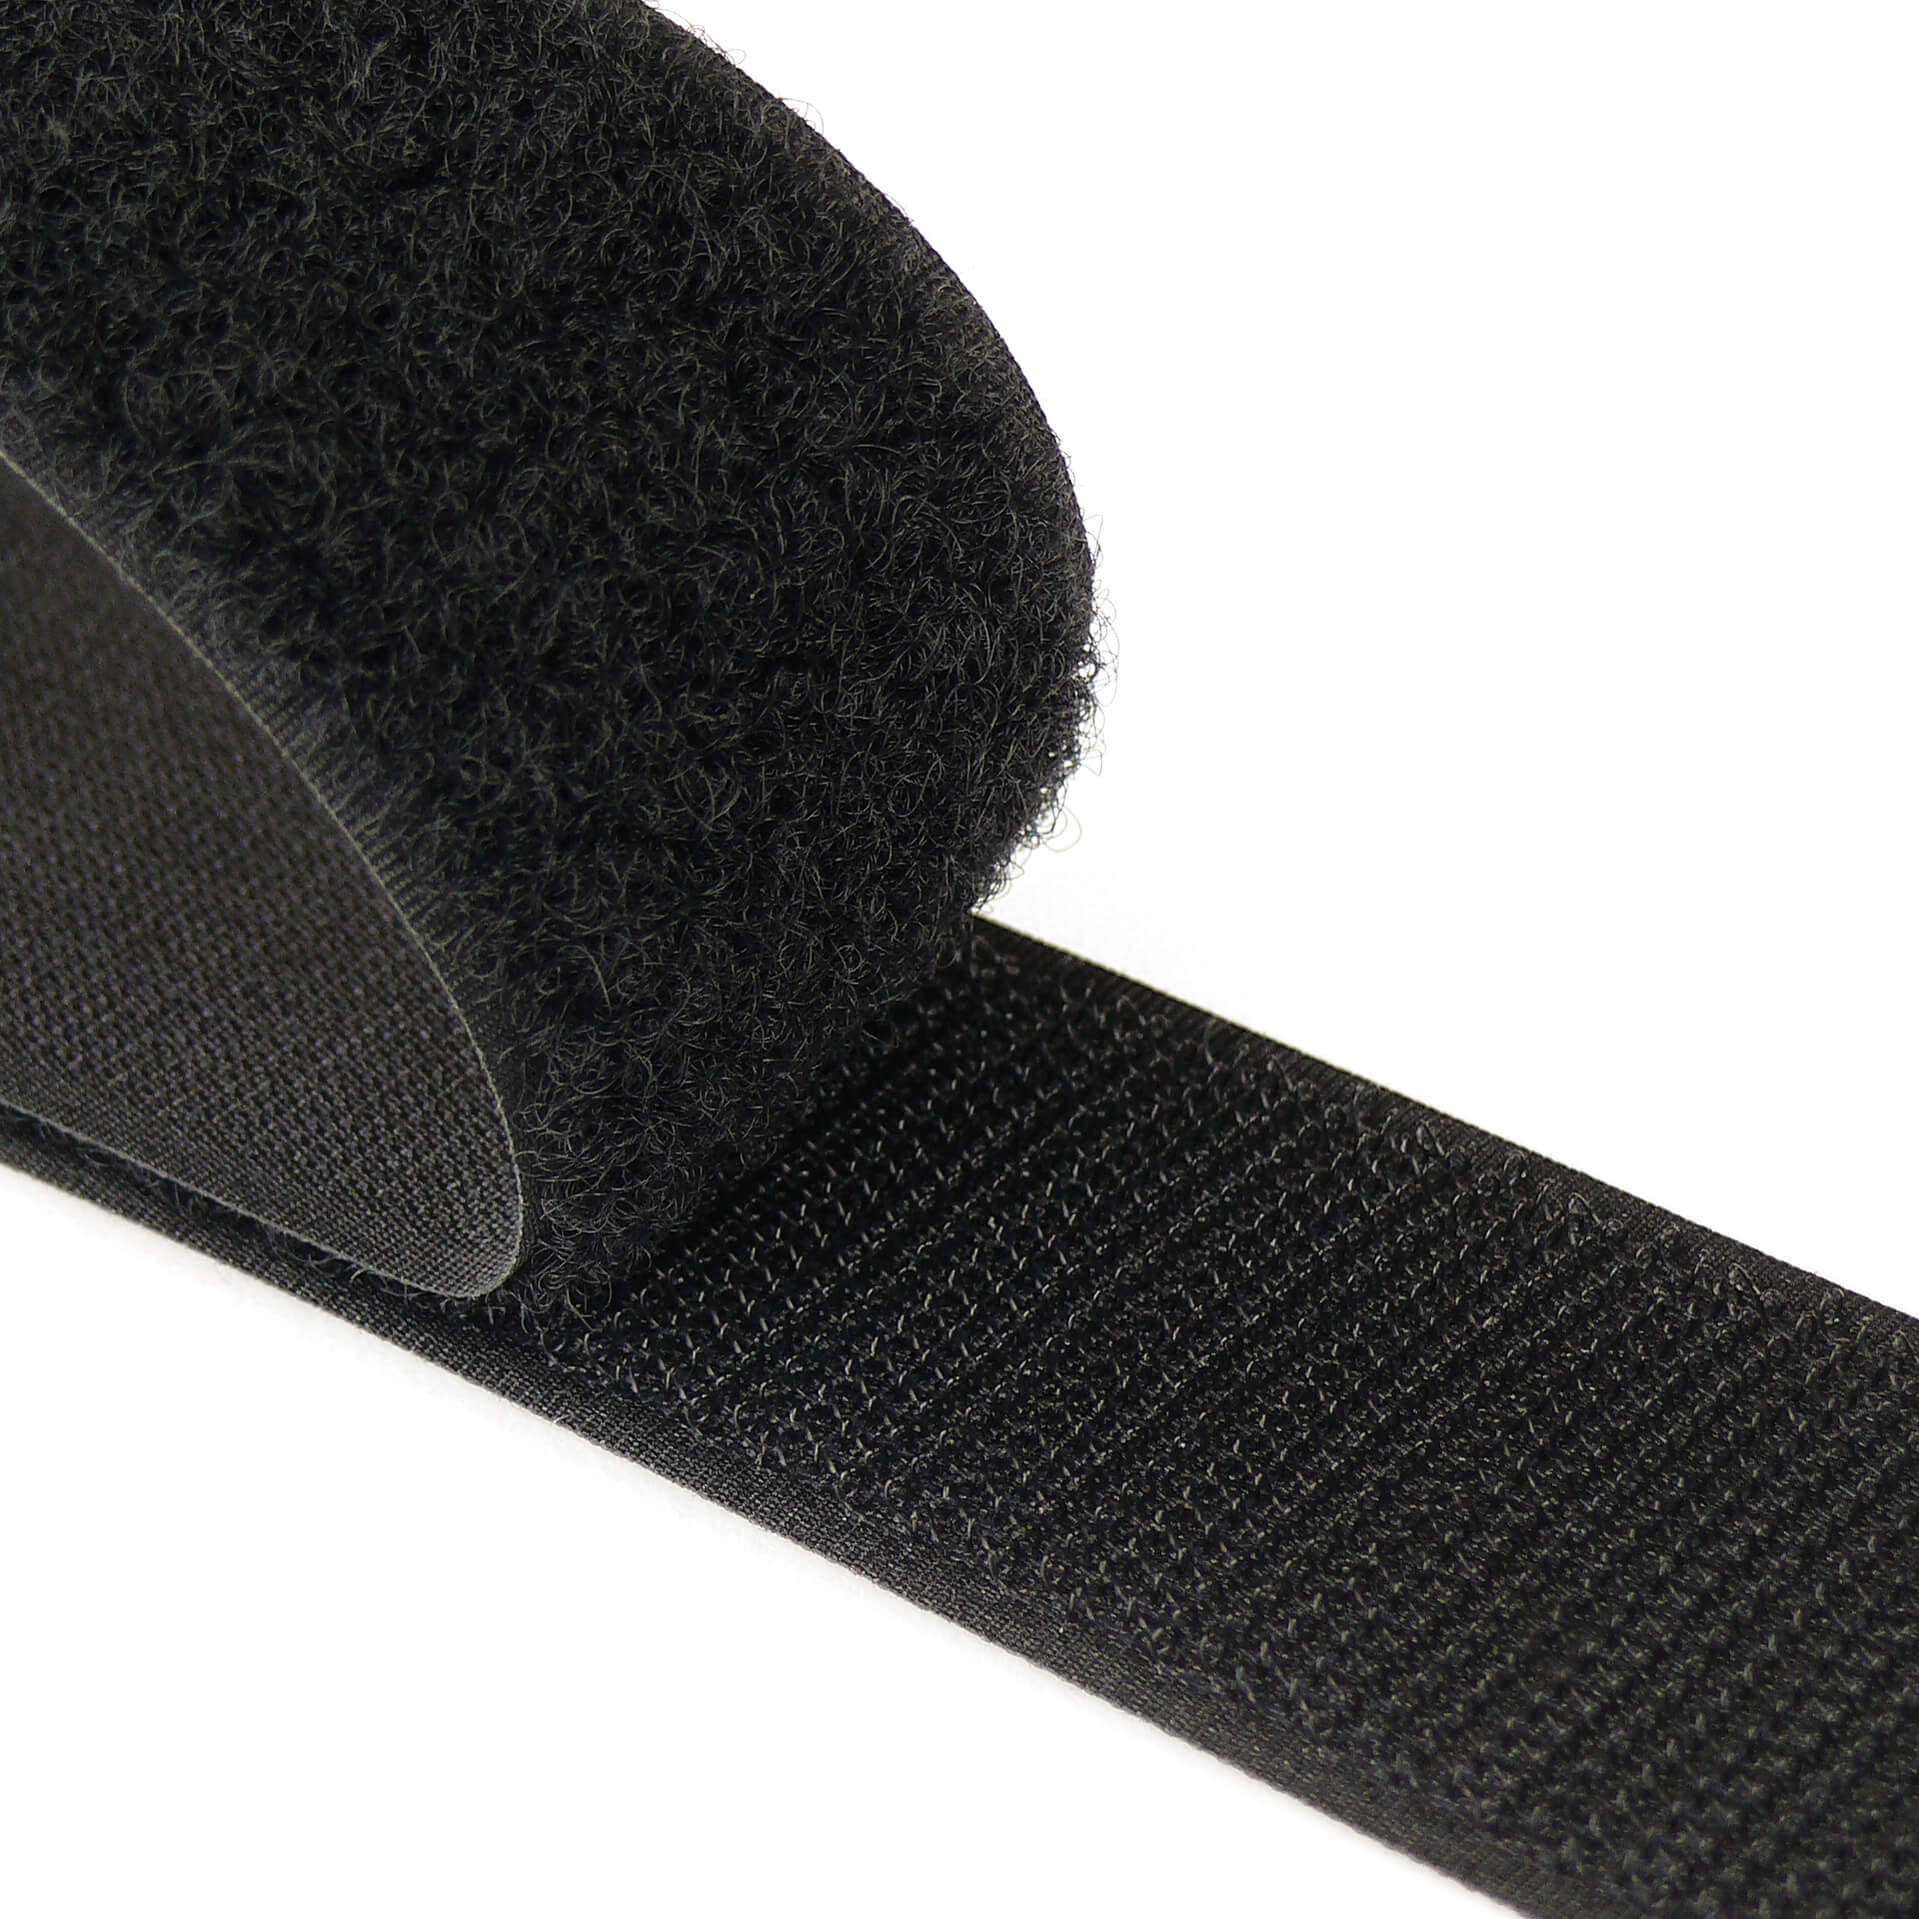 Sew-On VELCRO® Brand Hook & Loop 25mm Black Per Metre